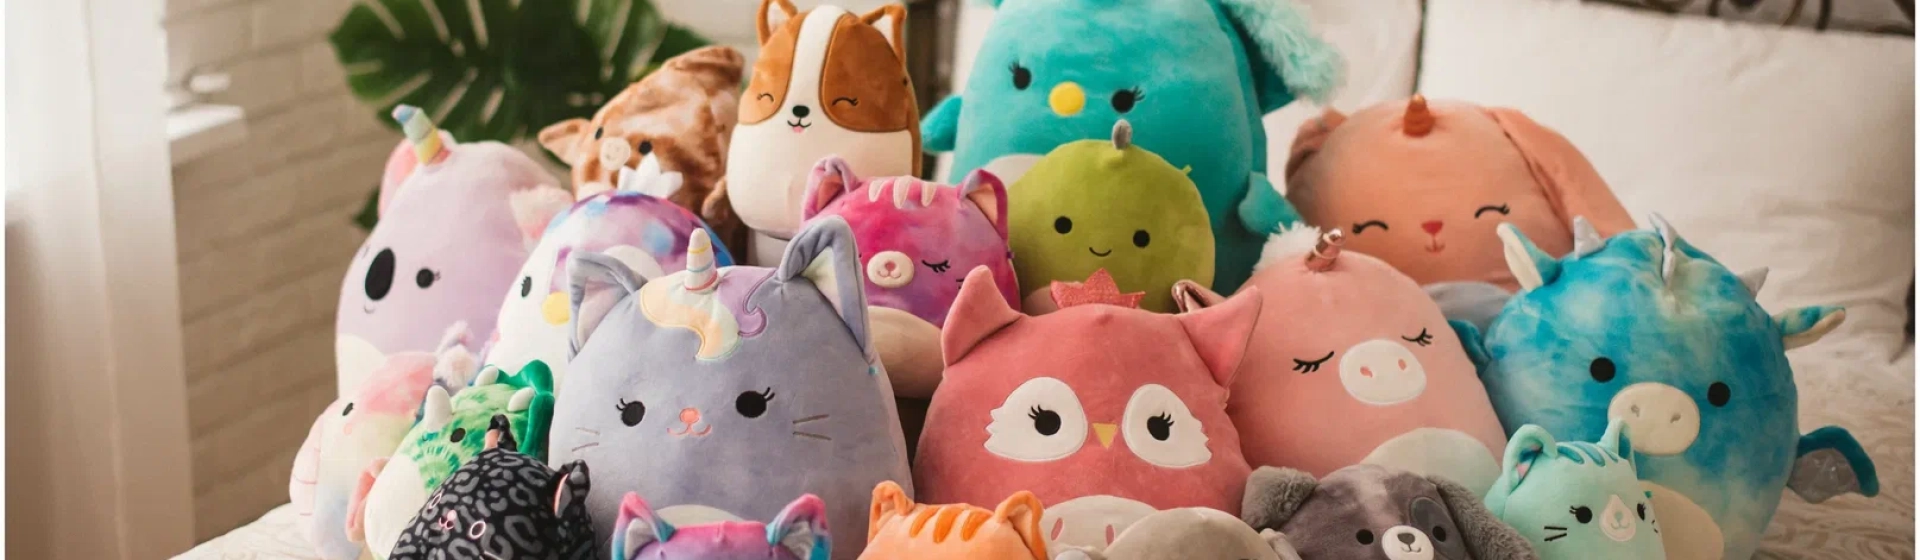 Интернет-магазин детских игрушек - купить развивающие игрушки и игры для детей